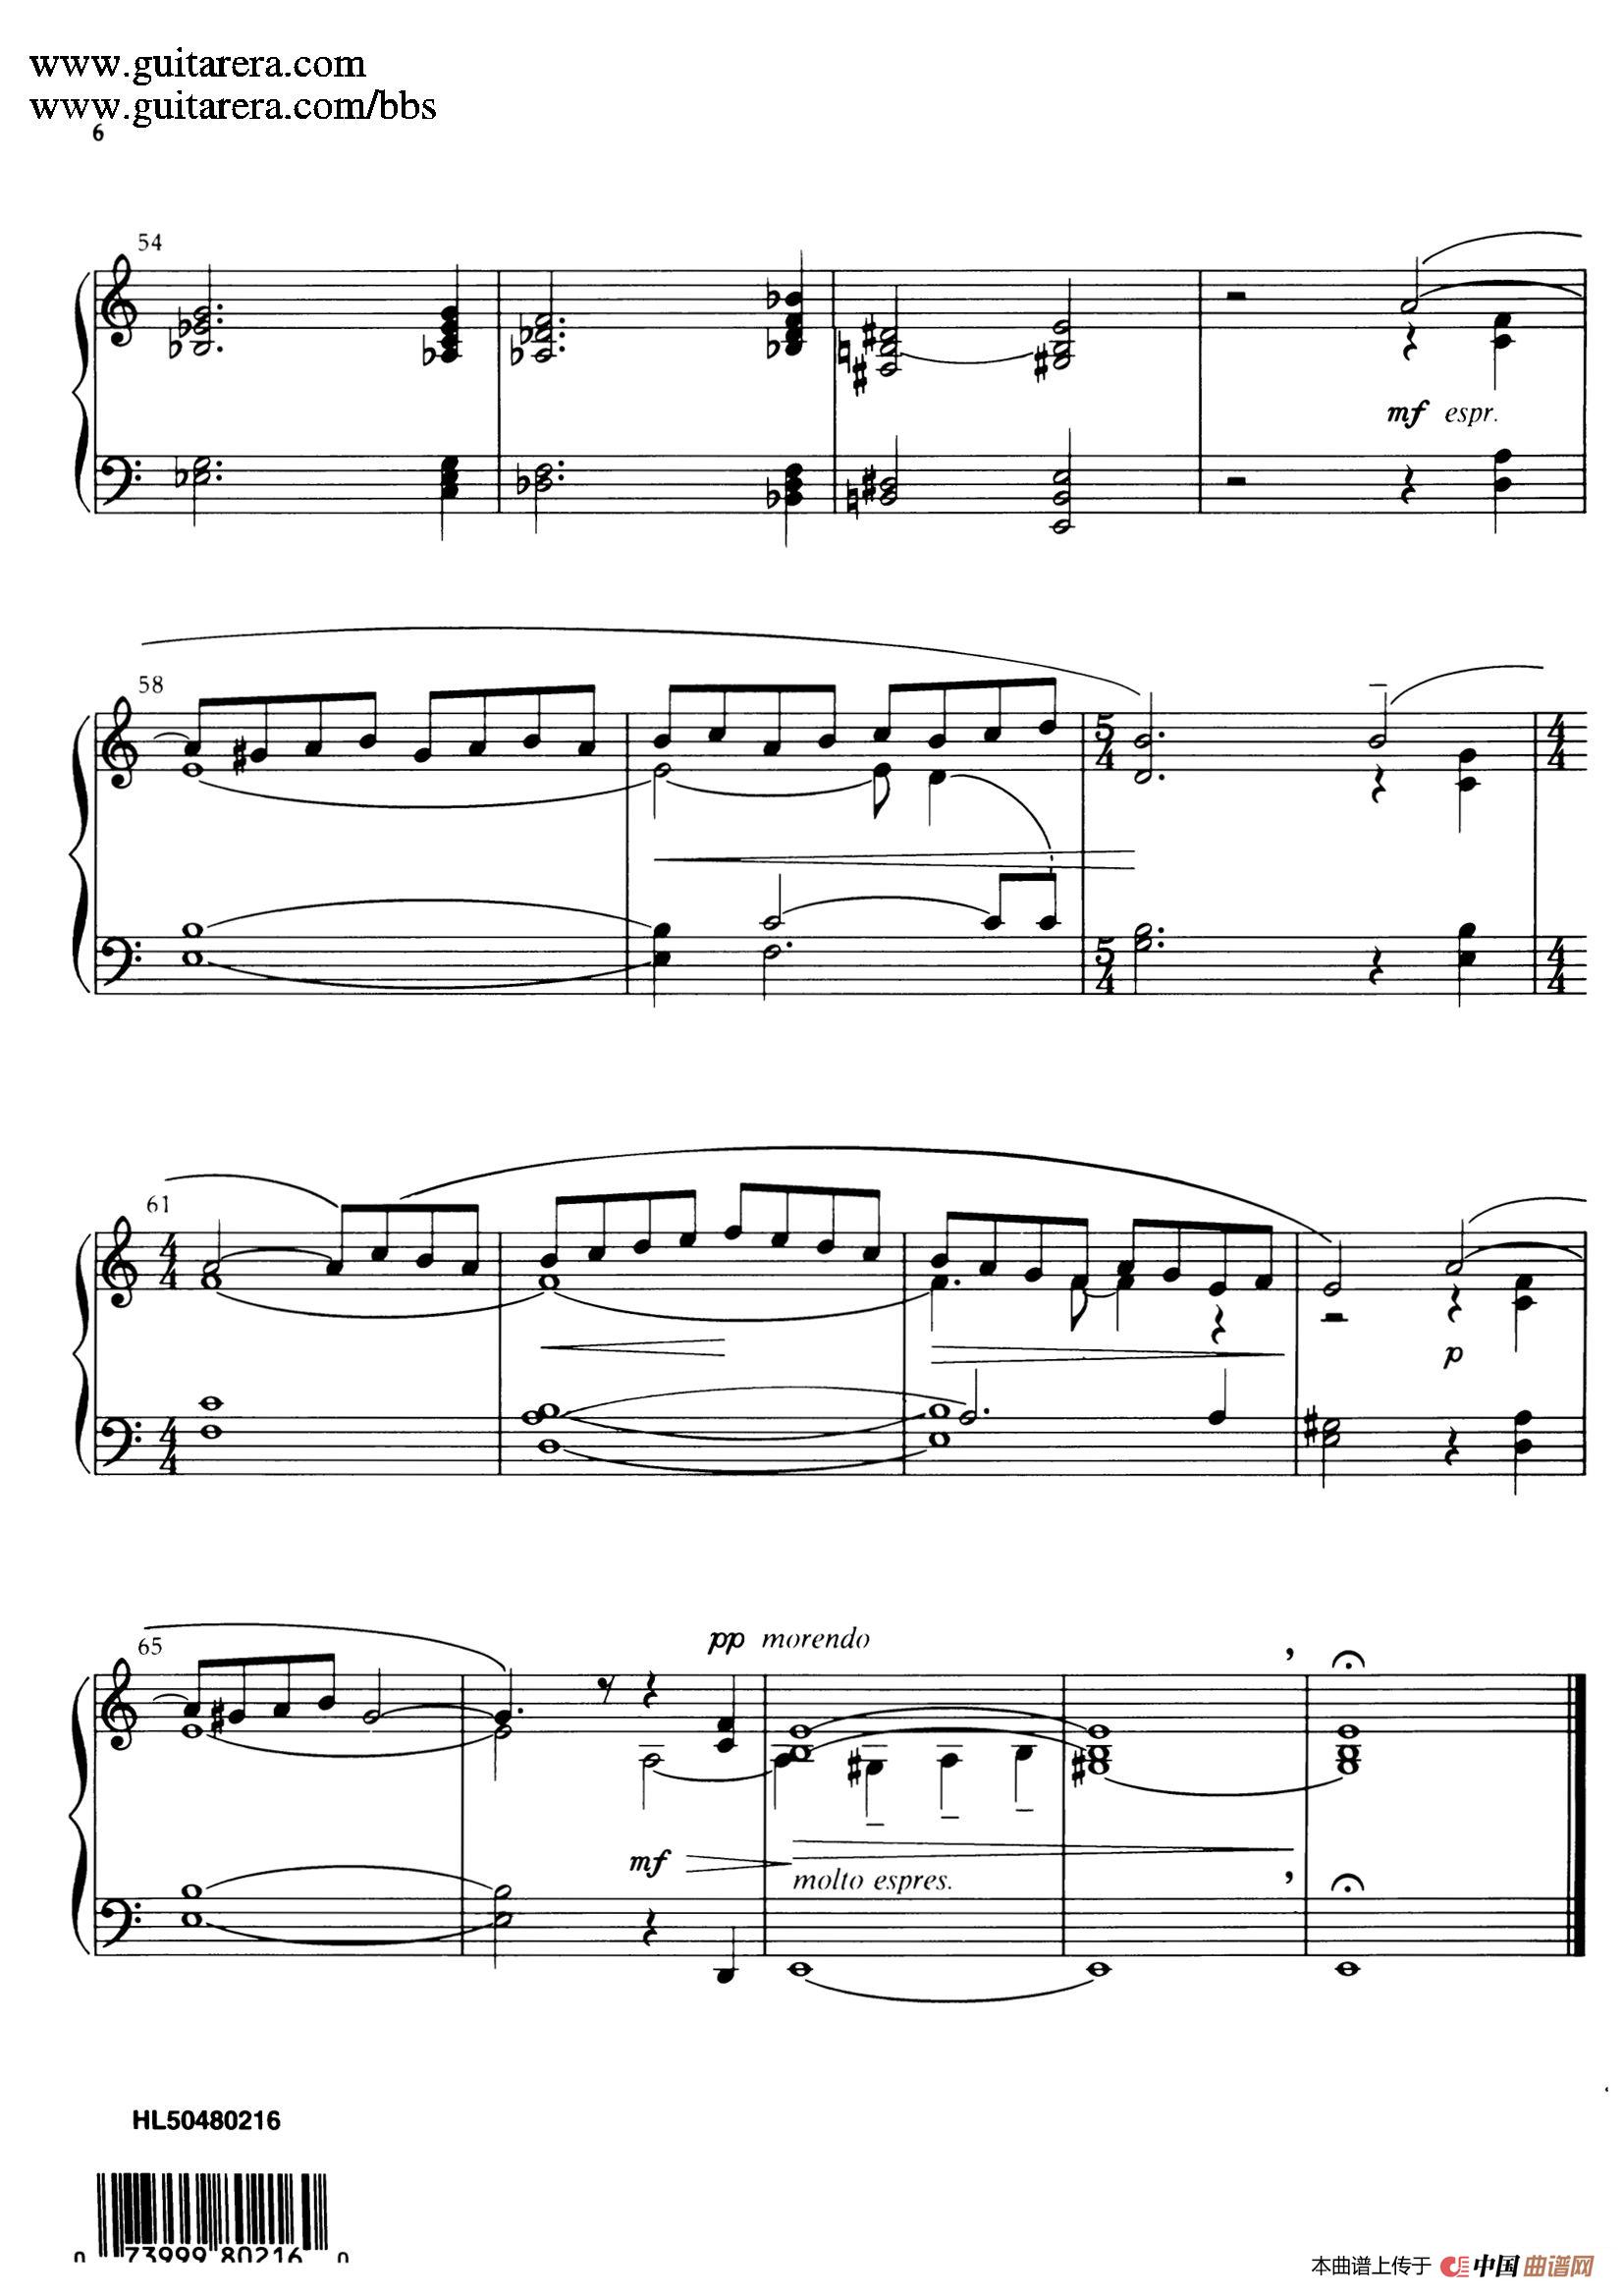 《Adagio Op.11》钢琴曲谱图分享